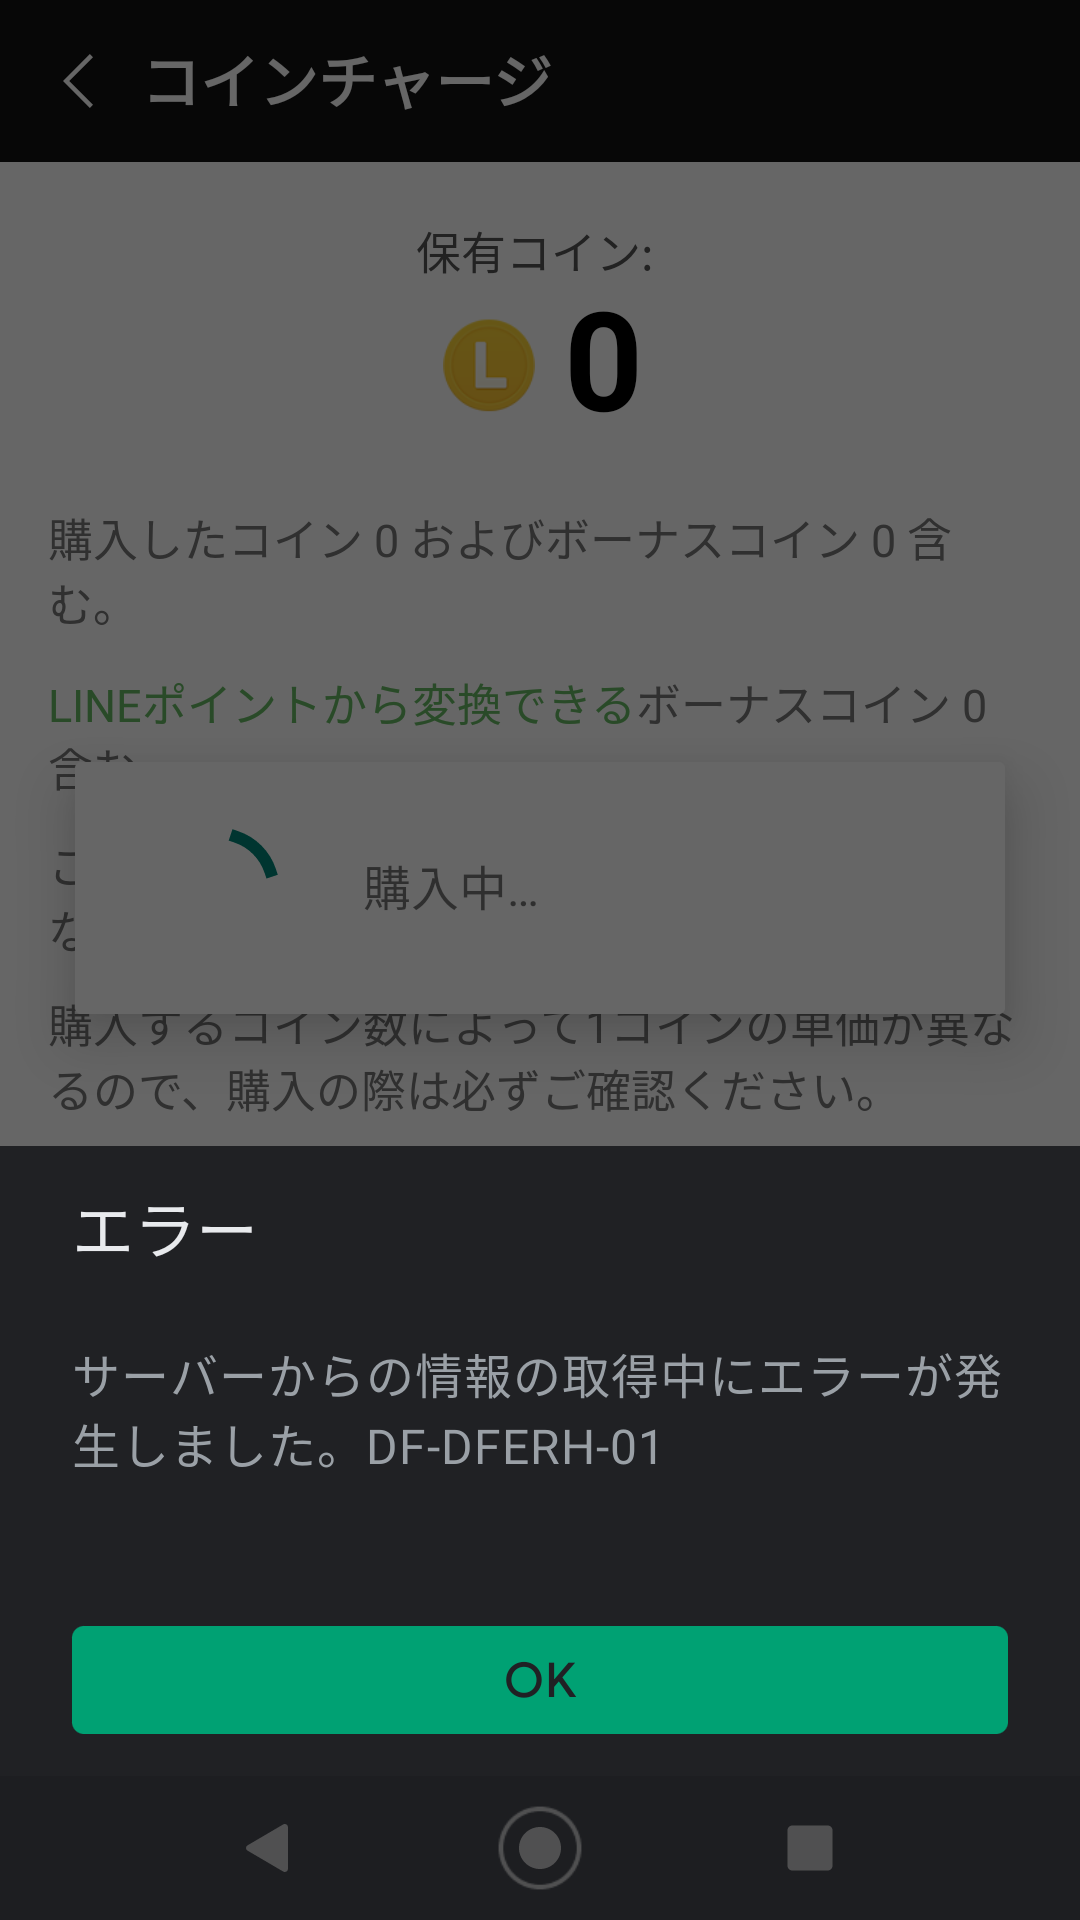 LINEコインの購入時に支払いの画面に移行しない - Google Play